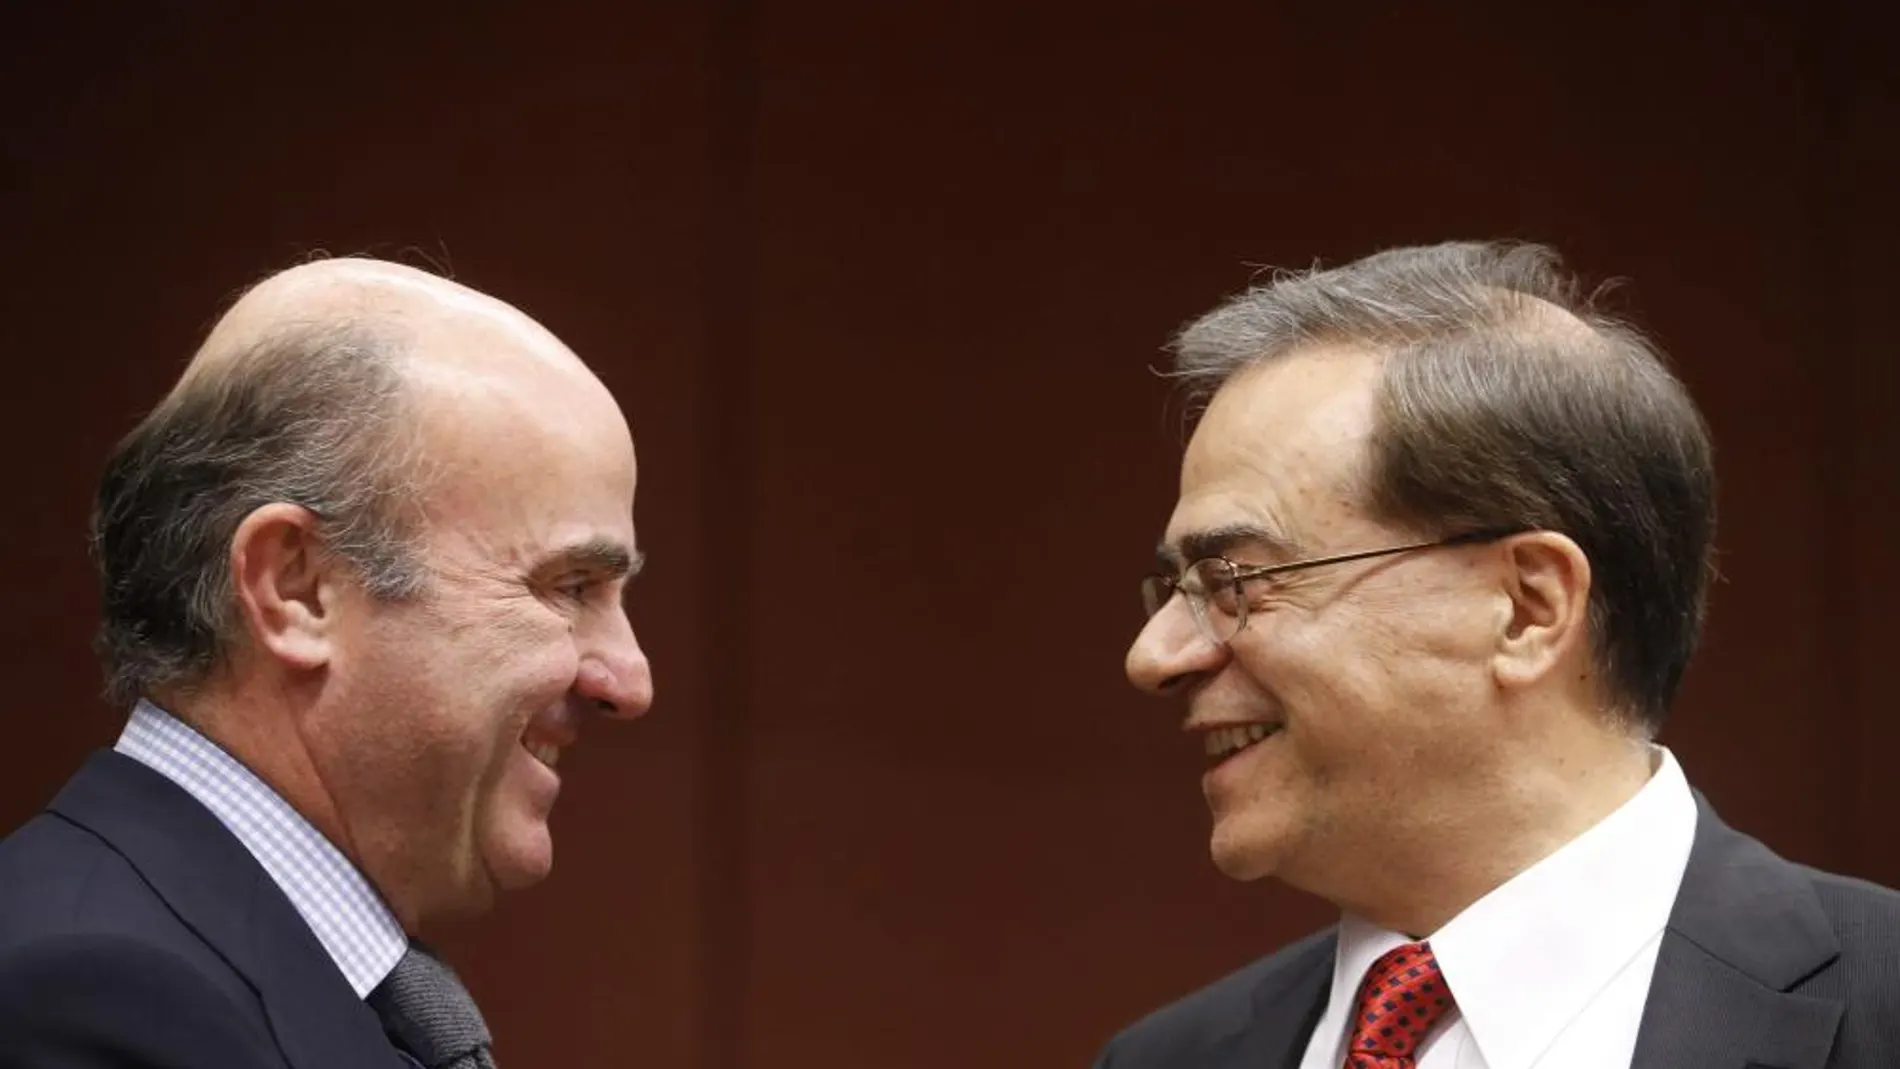 El ministro español de Economía y Competitividad, Luis de Guindos, habla con el ministro griego de Finanzas, Gikas Hardouvelis